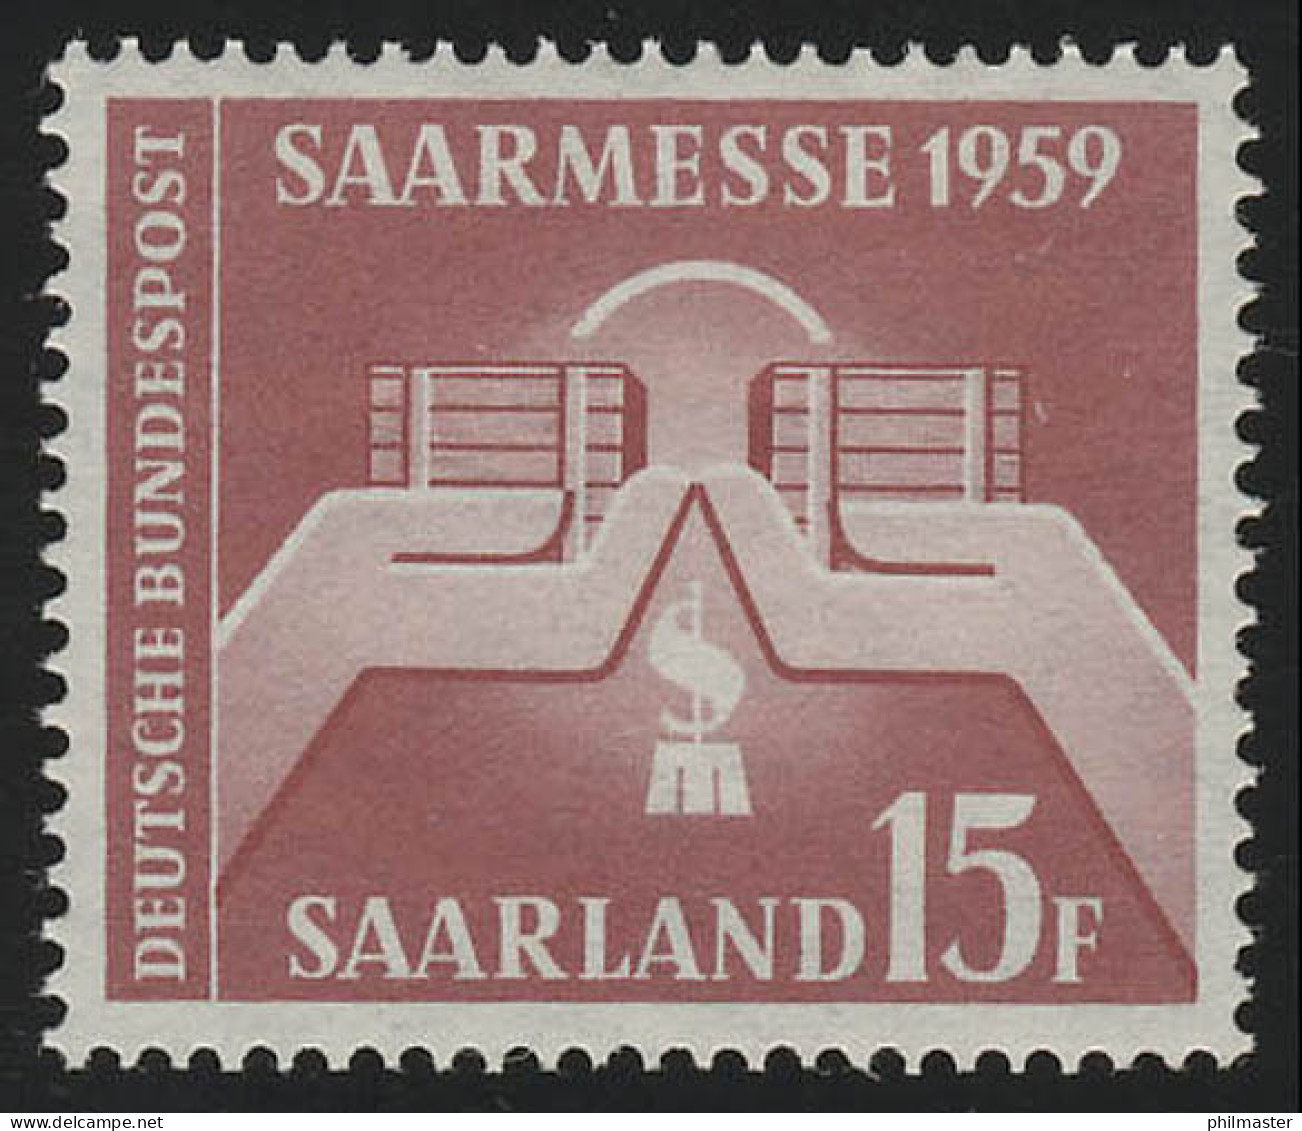 Saarland 447 Saarmesse Saarbrücken 1959, ** - Unused Stamps